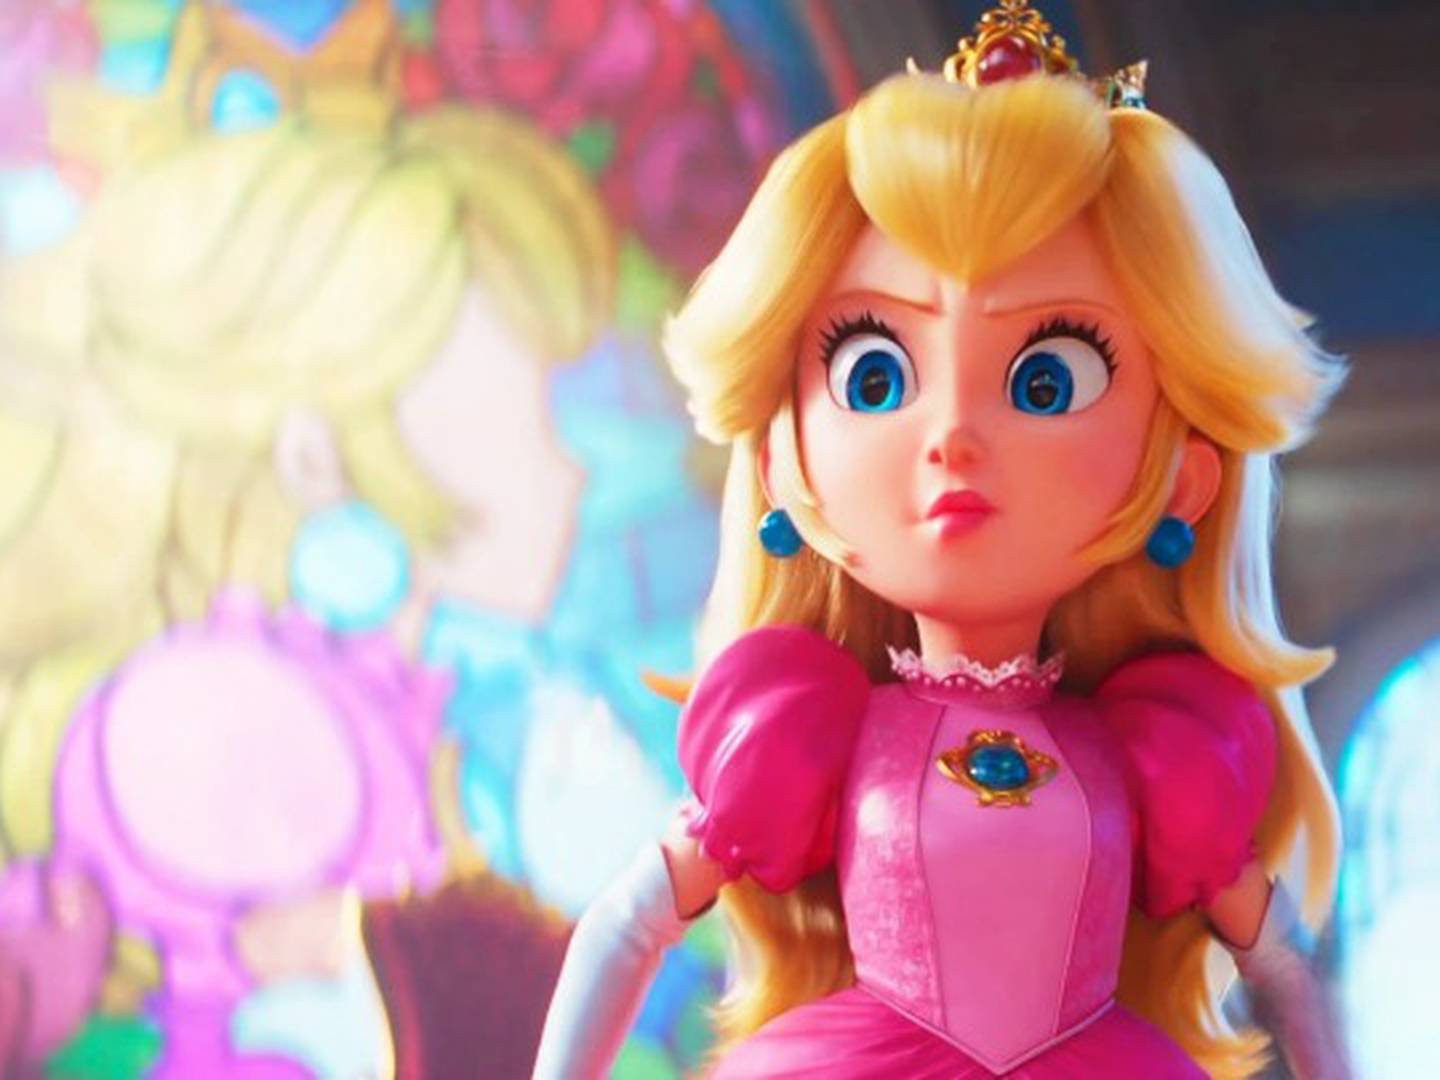 Super Mario Bros.: La princesa Peach presume su 'durazno' gracias a una  modelo rusa